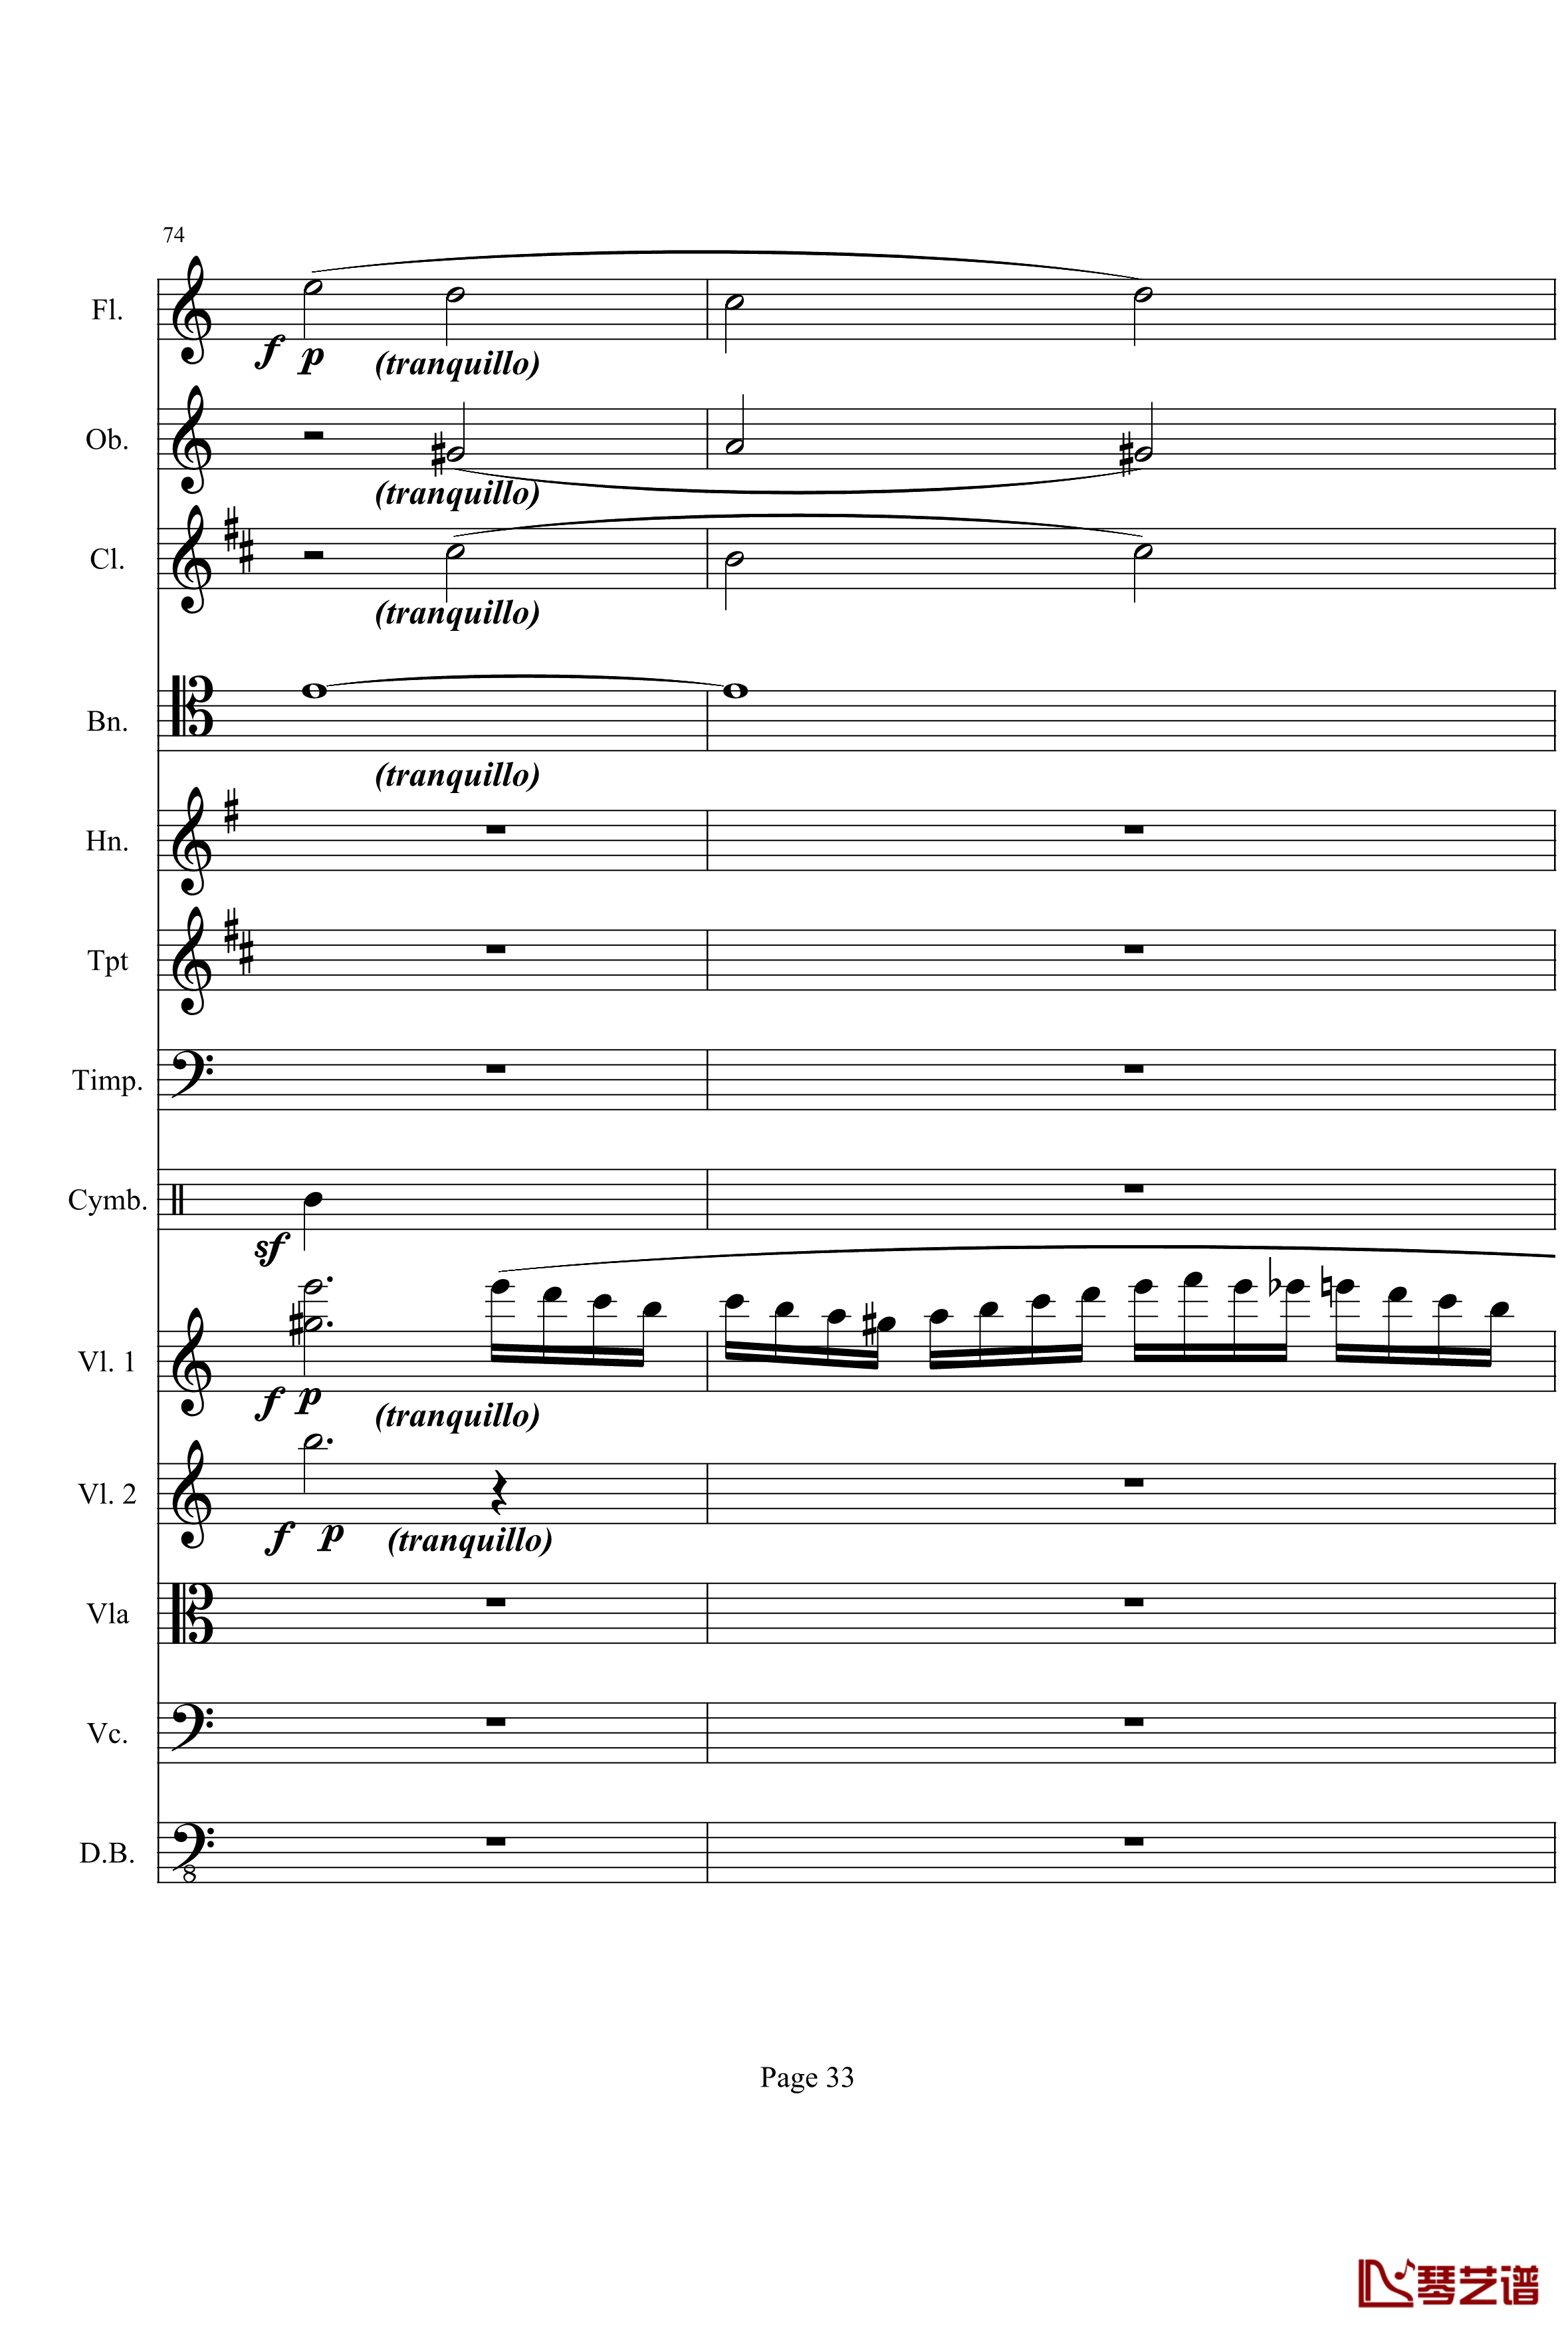 奏鸣曲之交响钢琴谱-第21首-Ⅰ-贝多芬-beethoven33